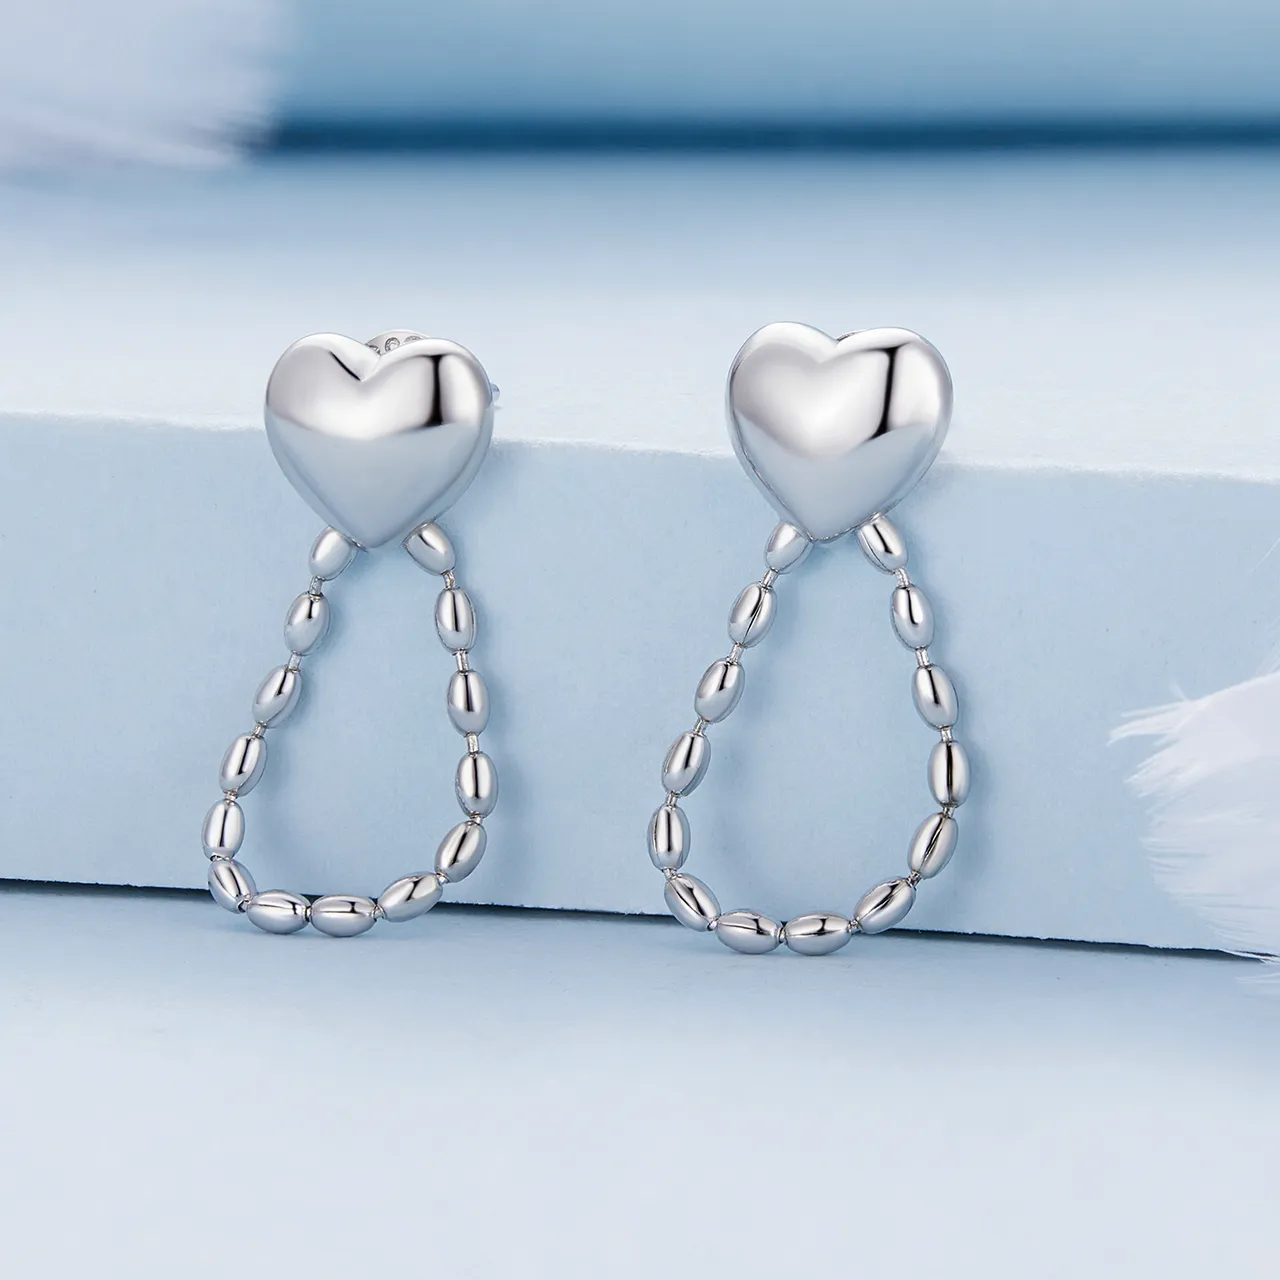 Pandora Style Heart-Shaped Tassels Dangle Earrings - BSE825